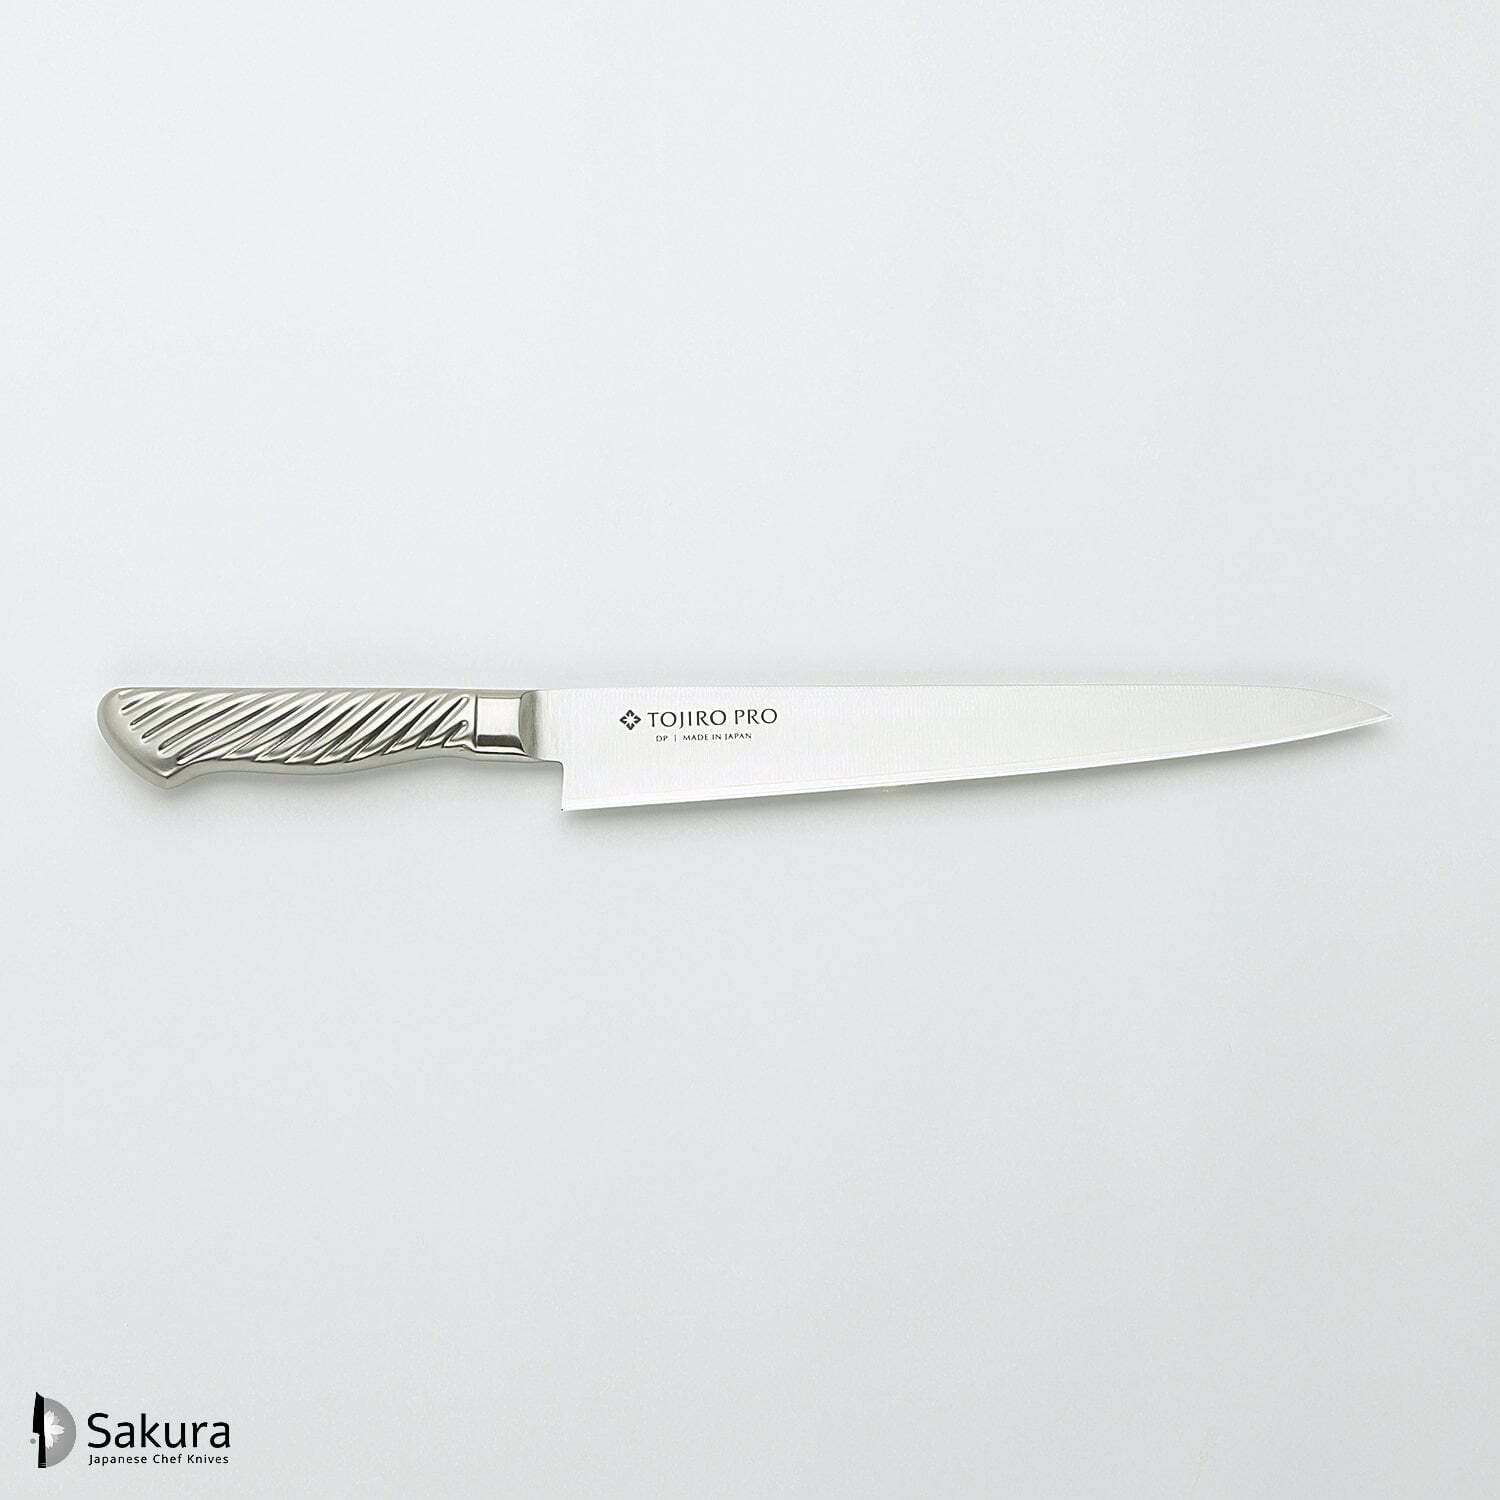 סכין חיתוך ופריסת בשר סוּגִּ’יהִיקִי 270מ״מ מחוזקת 3 שכבות: פלדת פחמן יפנית VG-10 עטופה פלדת אל-חלד גימור מט מלוטש טוג׳ירו יפן SKTOJIF-88711